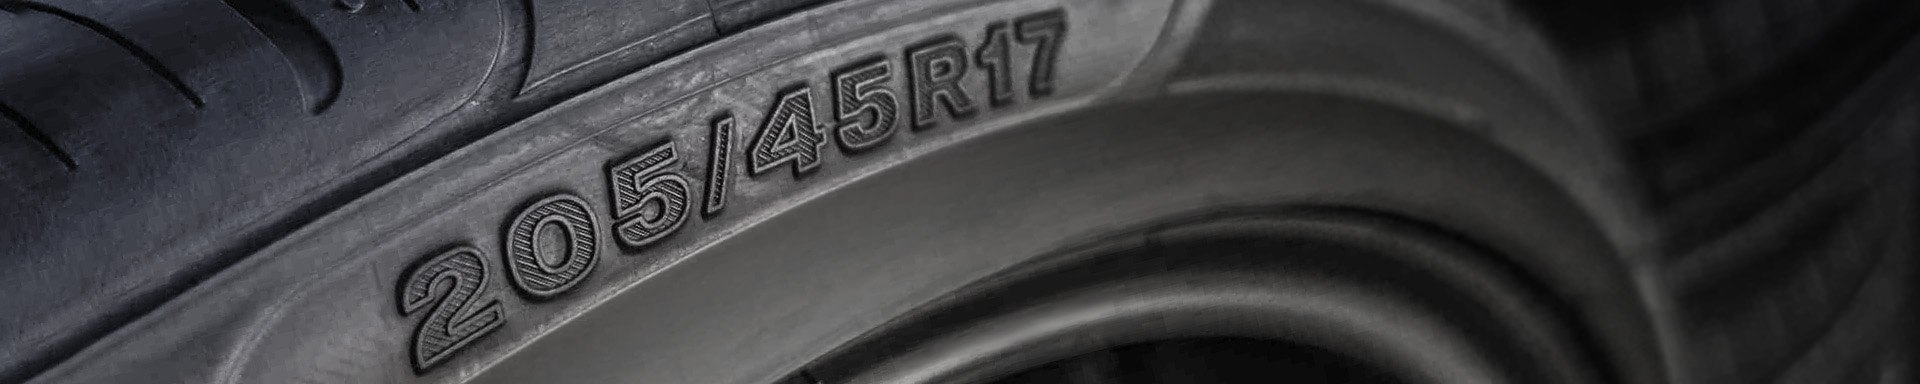 28/9-R15 vs 33/12-R16 Tire Comparison - Tire Size Calculator